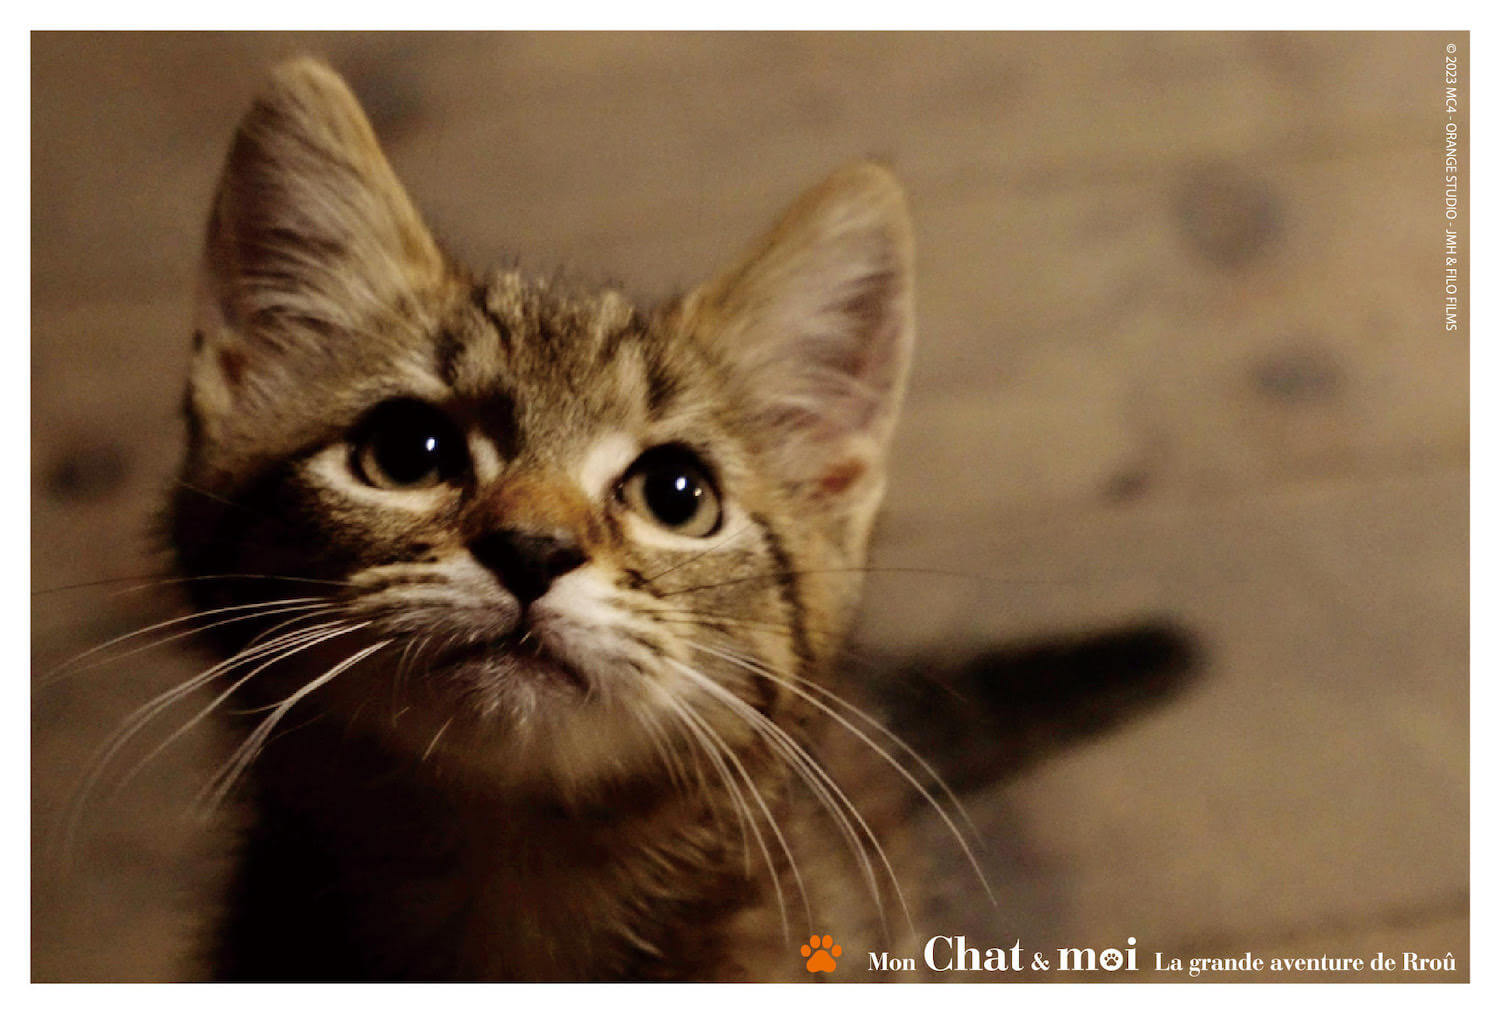 映画『ルー、パリで生まれた猫』に登場する猫ルーのポストカード